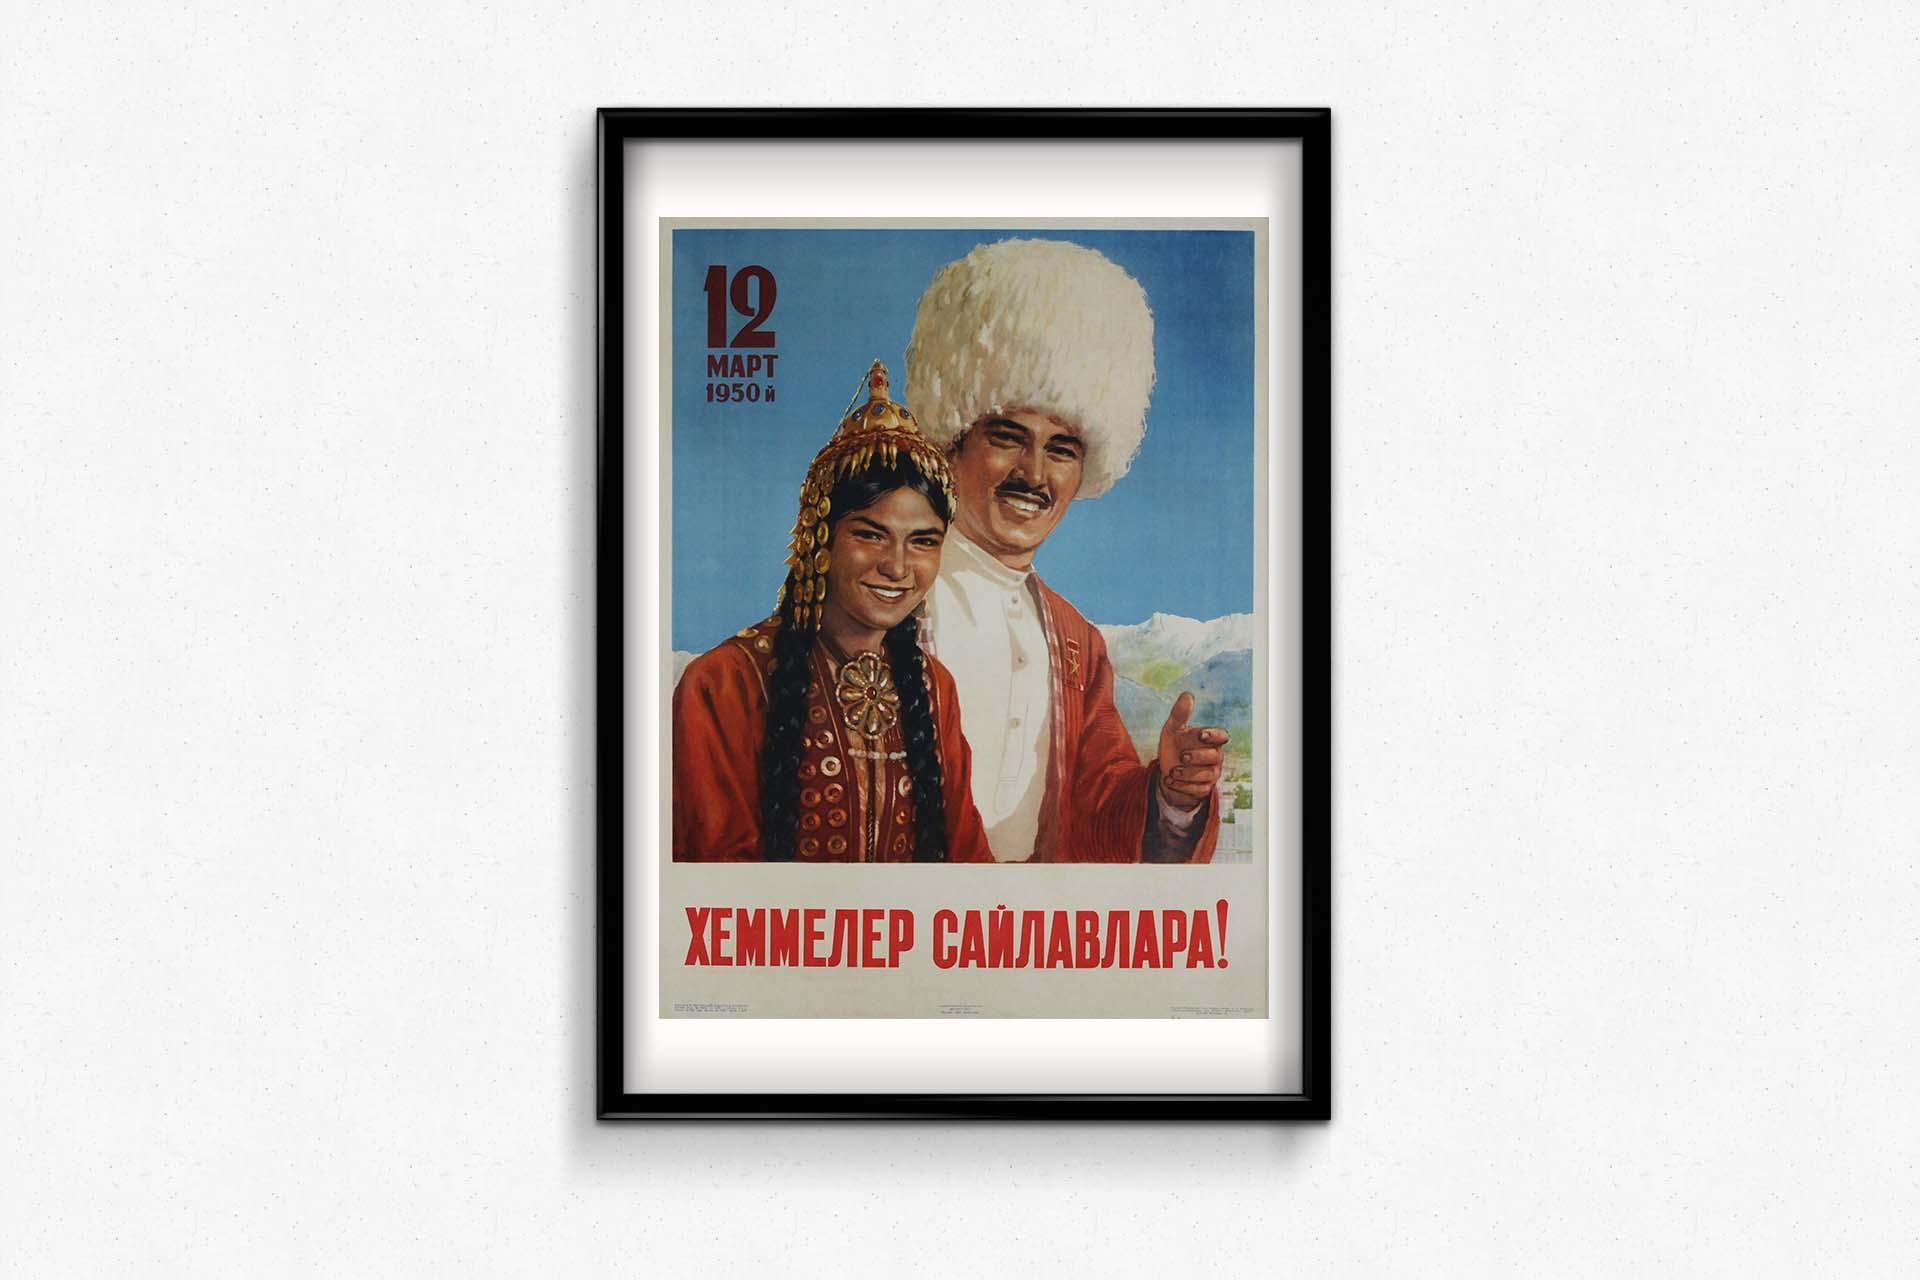 The original Soviet political poster 